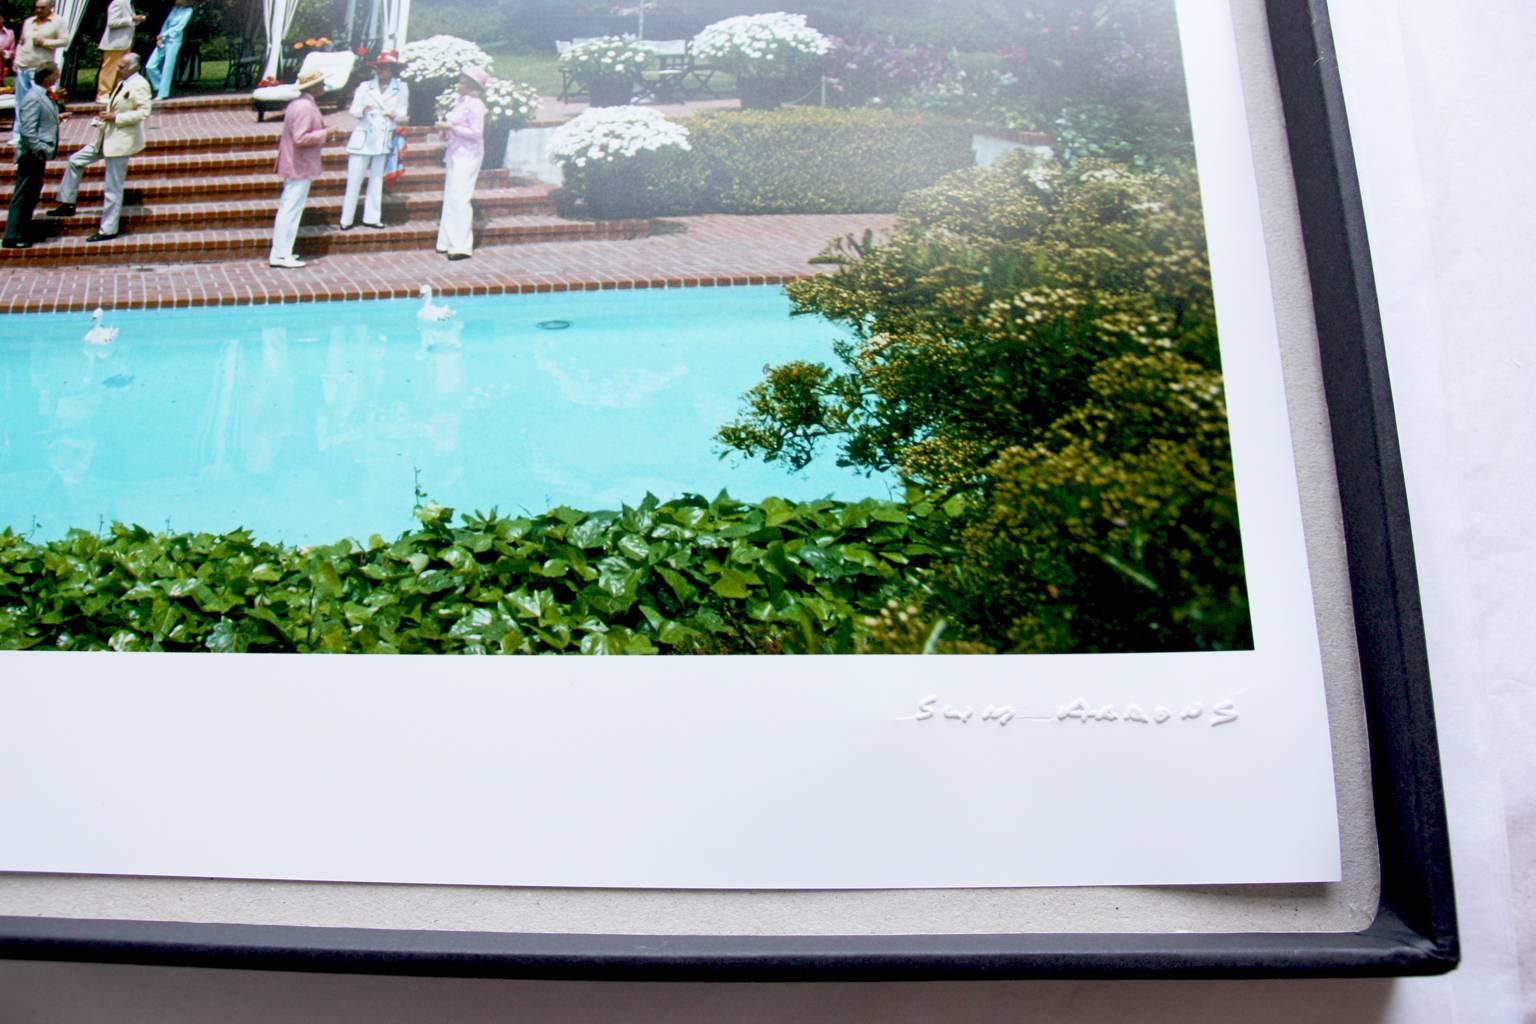 'Sunbathing On Capri' (SLIM AARONS Estate Edition) - Brown Nude Photograph by Slim Aarons